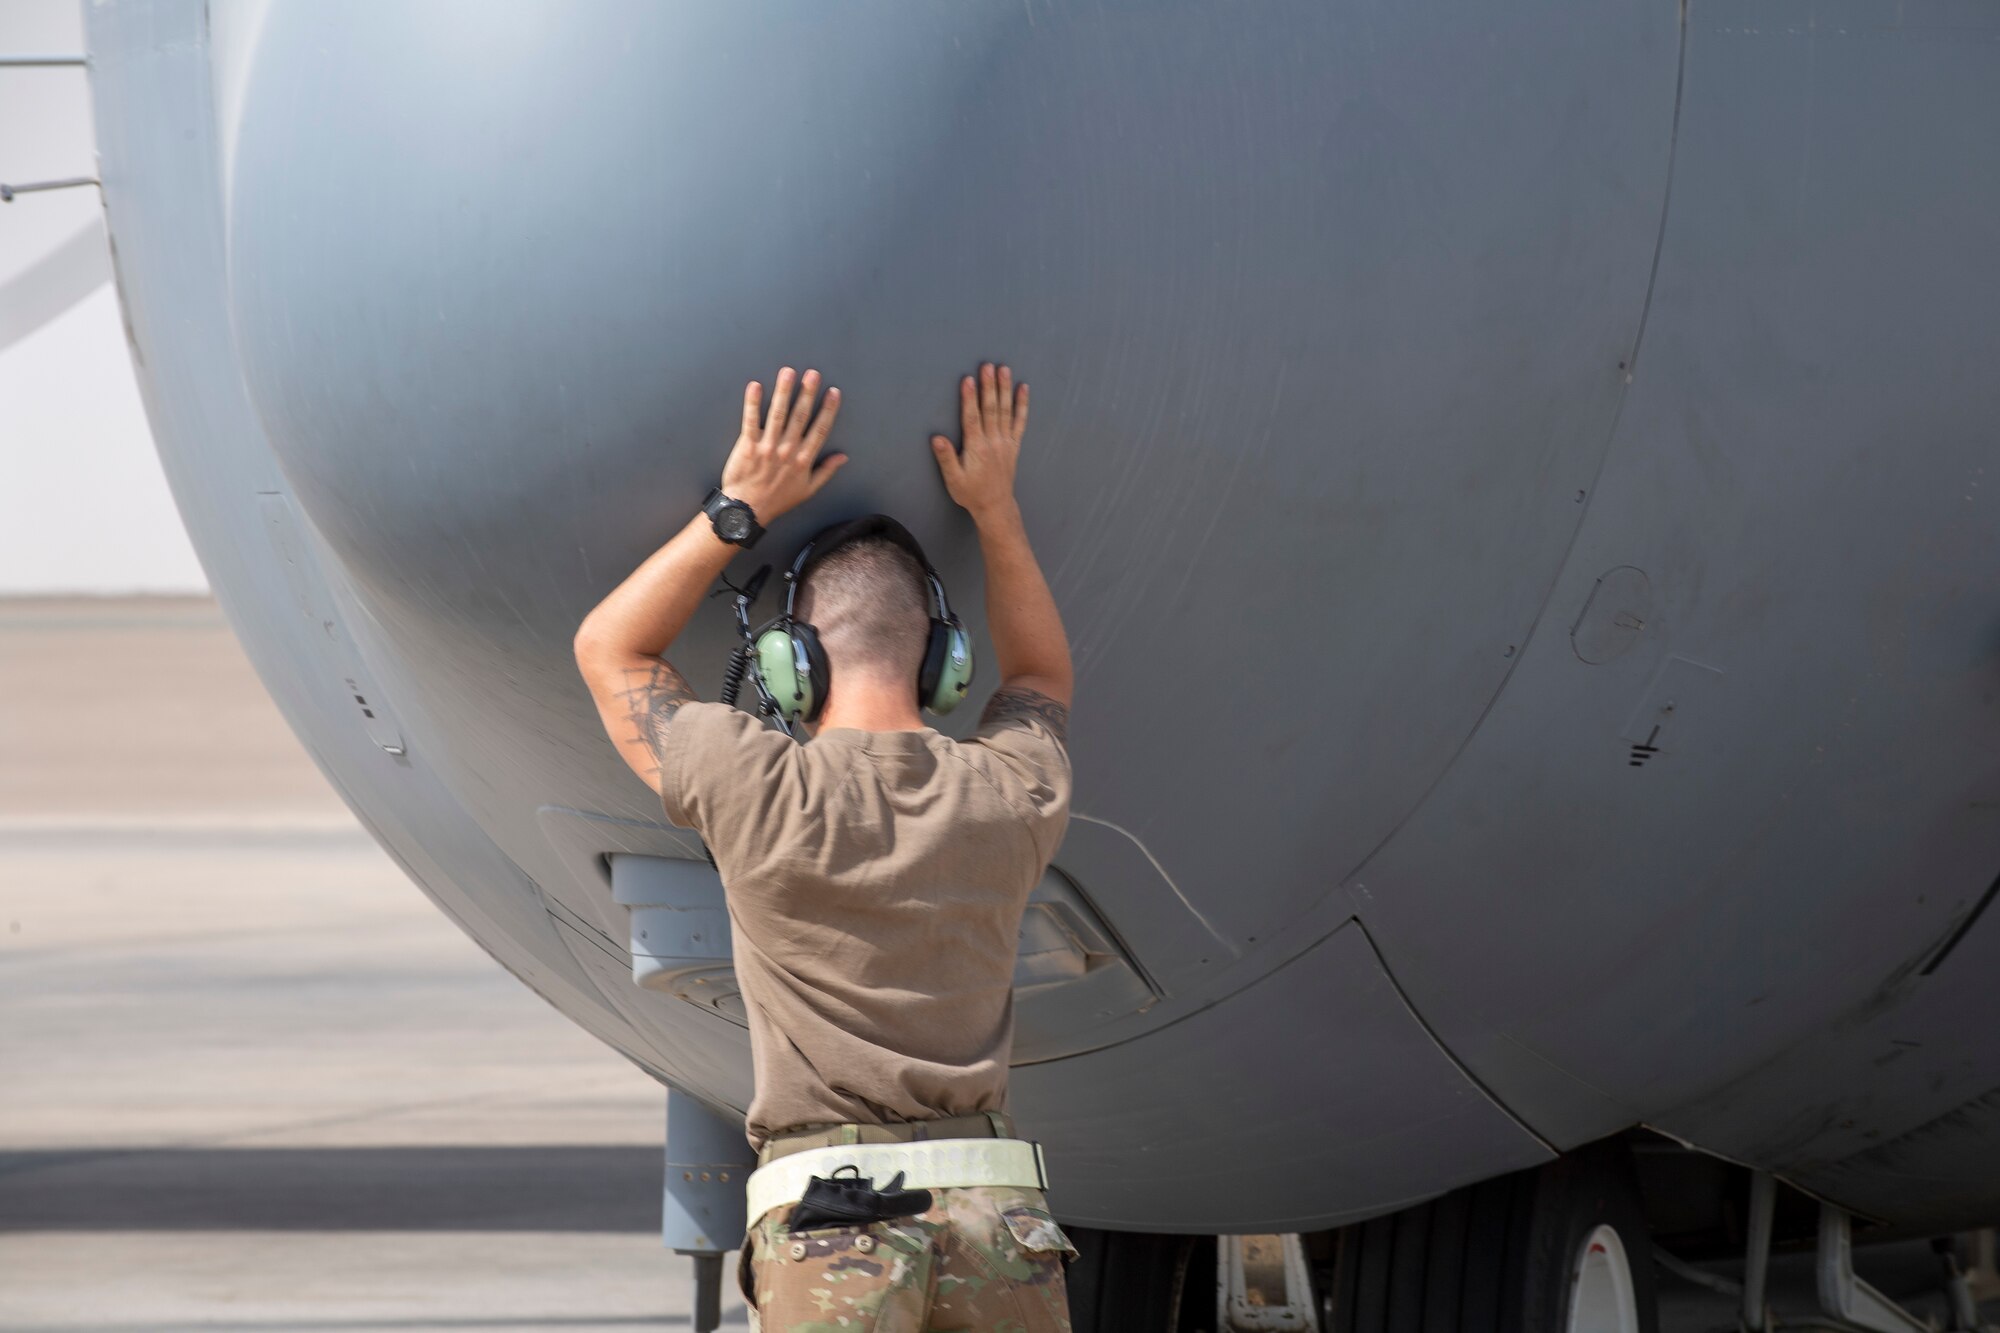 Airman putting hands on an EC-130H Compass Call aircraft